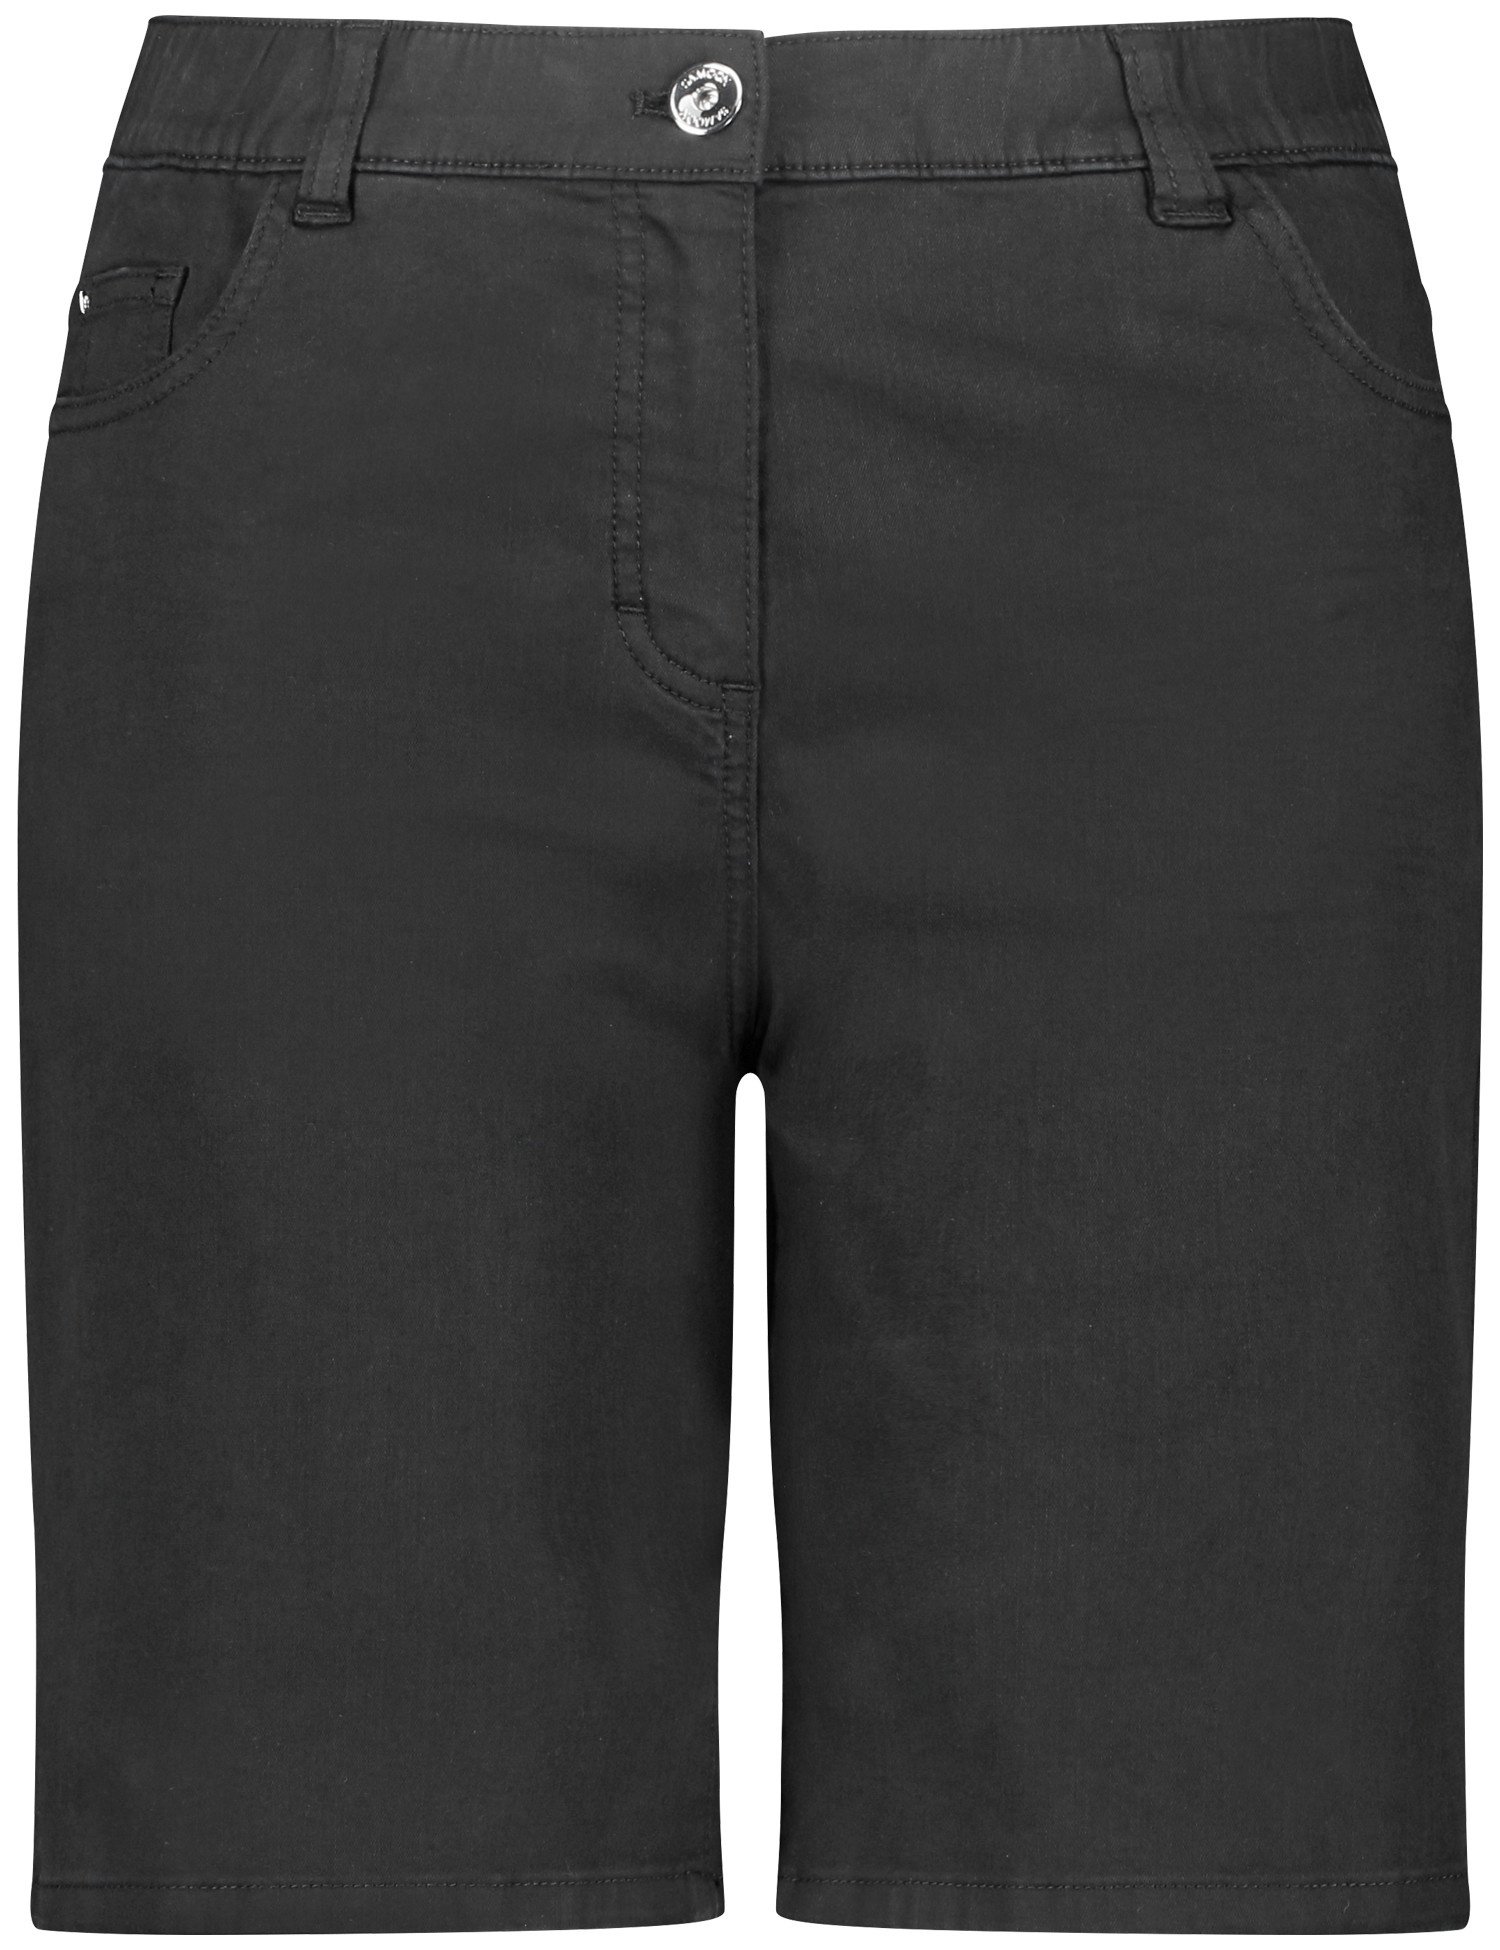 SAMOON Damen Shorts aus Baumwoll-Stretch Baumwolle Schwarz, 48 von SAMOON